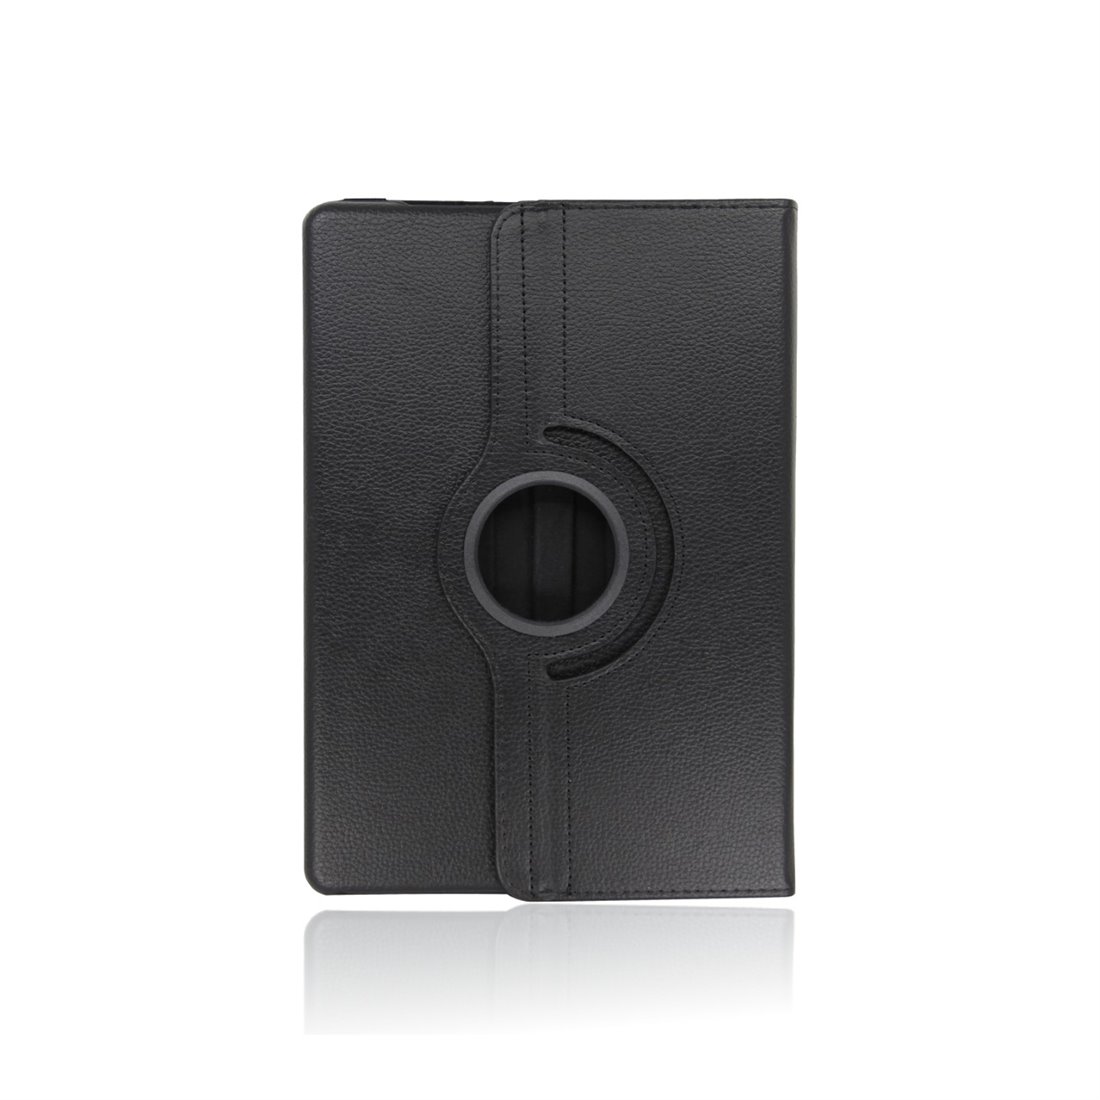 Apple iPad pro 12.9 (2020) Leatherette Black Book Case Tablet - rotatable